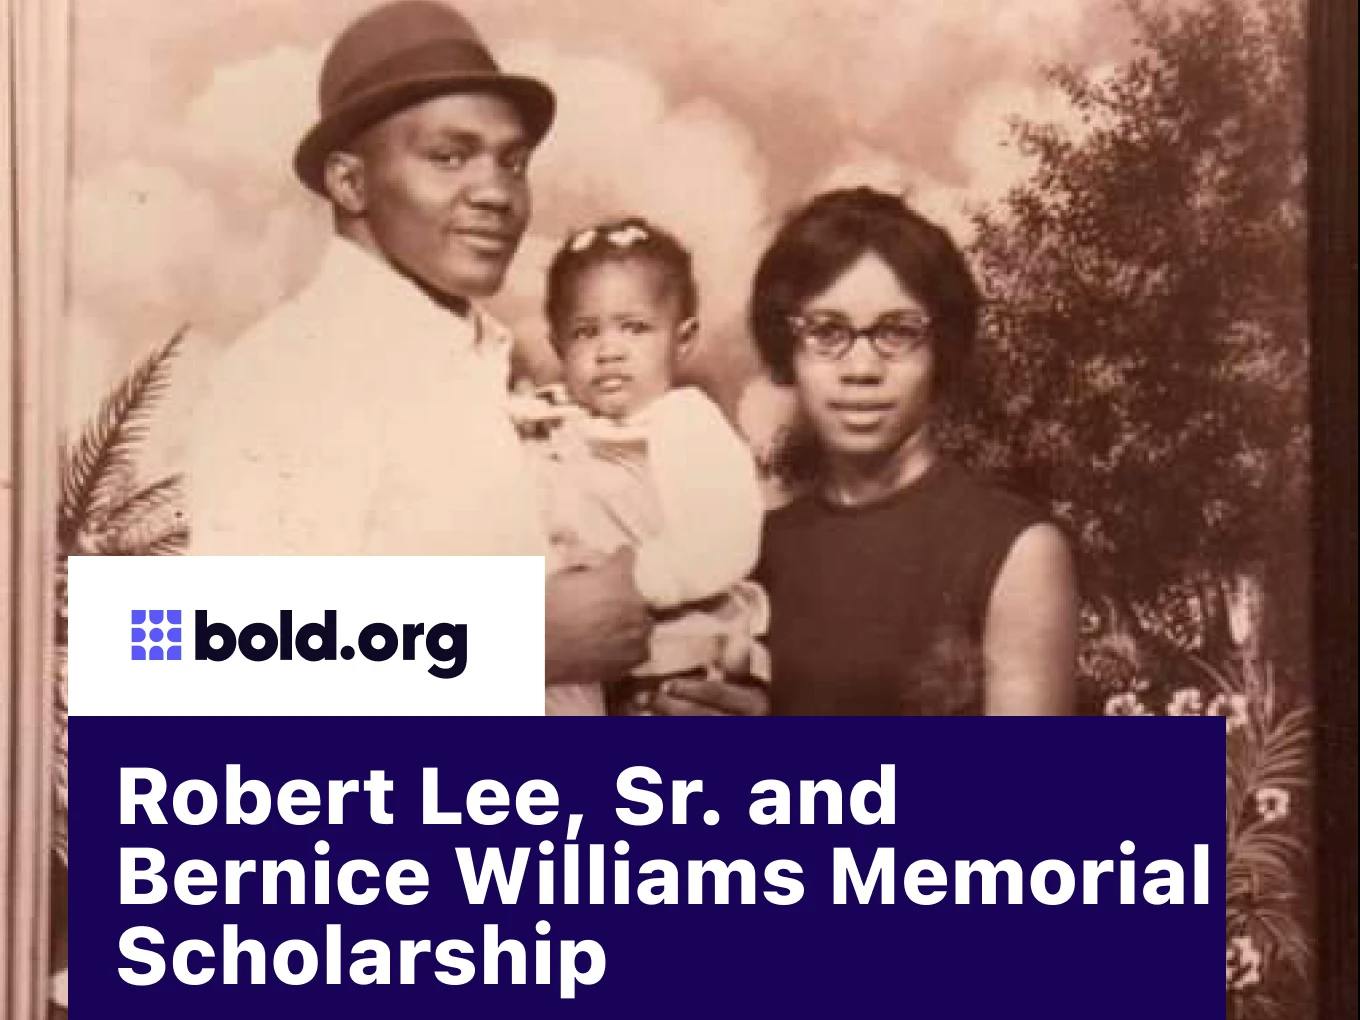 Robert Lee, Sr. and Bernice Williams Memorial Scholarship